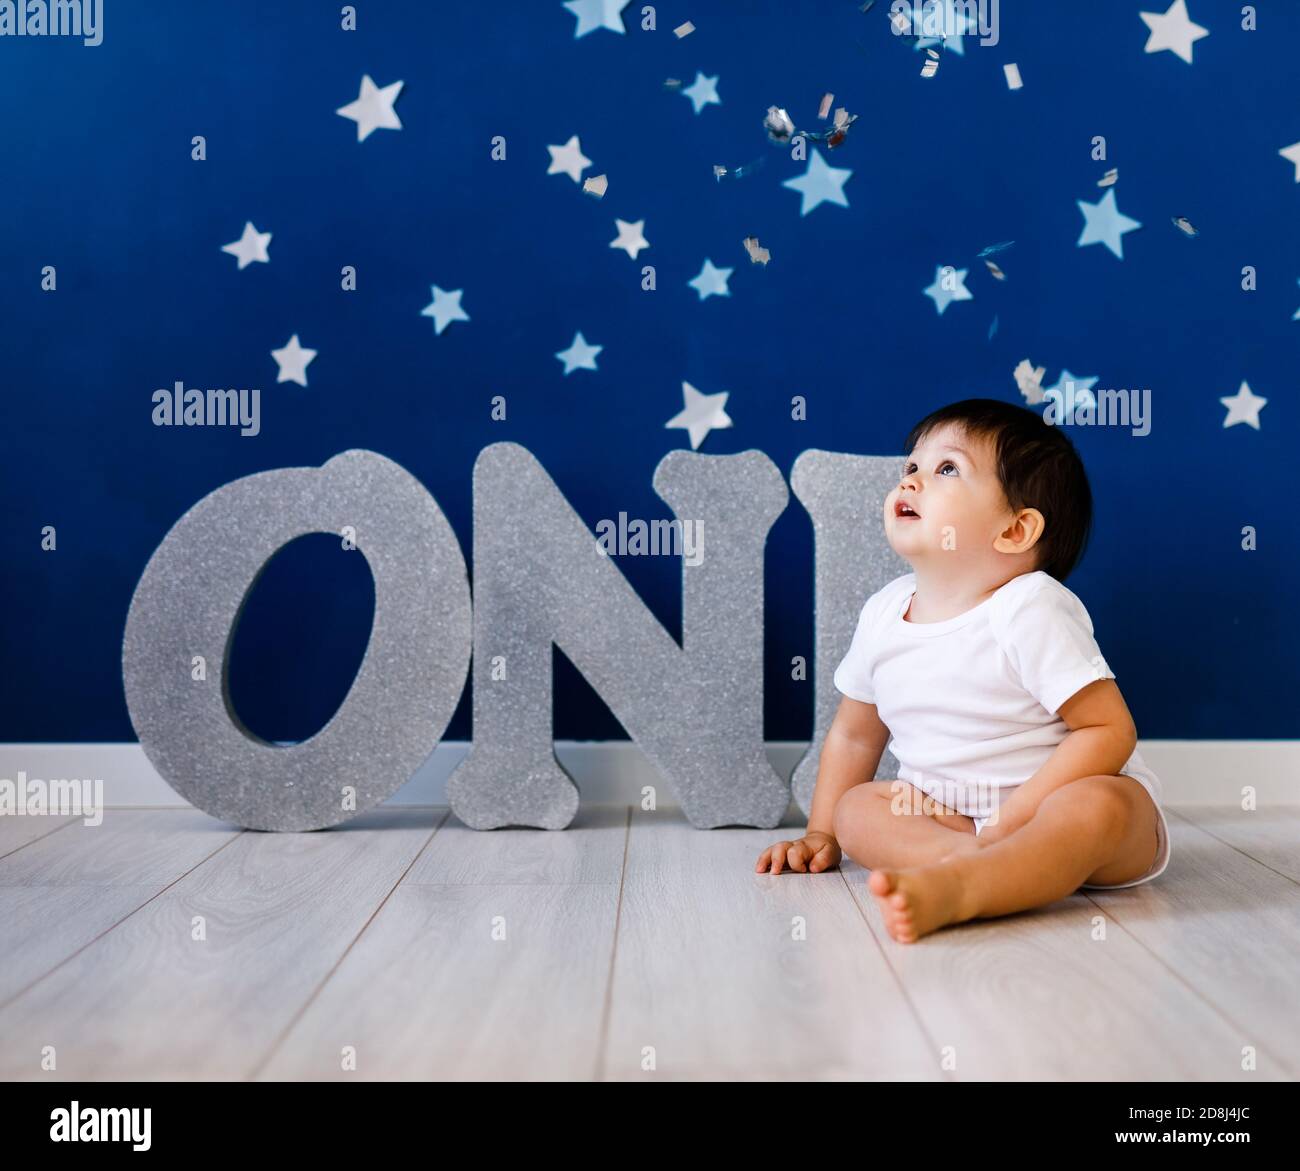 2,205 en la categoría «Birthday background for 1 year old baby boy» de  imágenes, fotos de stock e ilustraciones libres de regalías